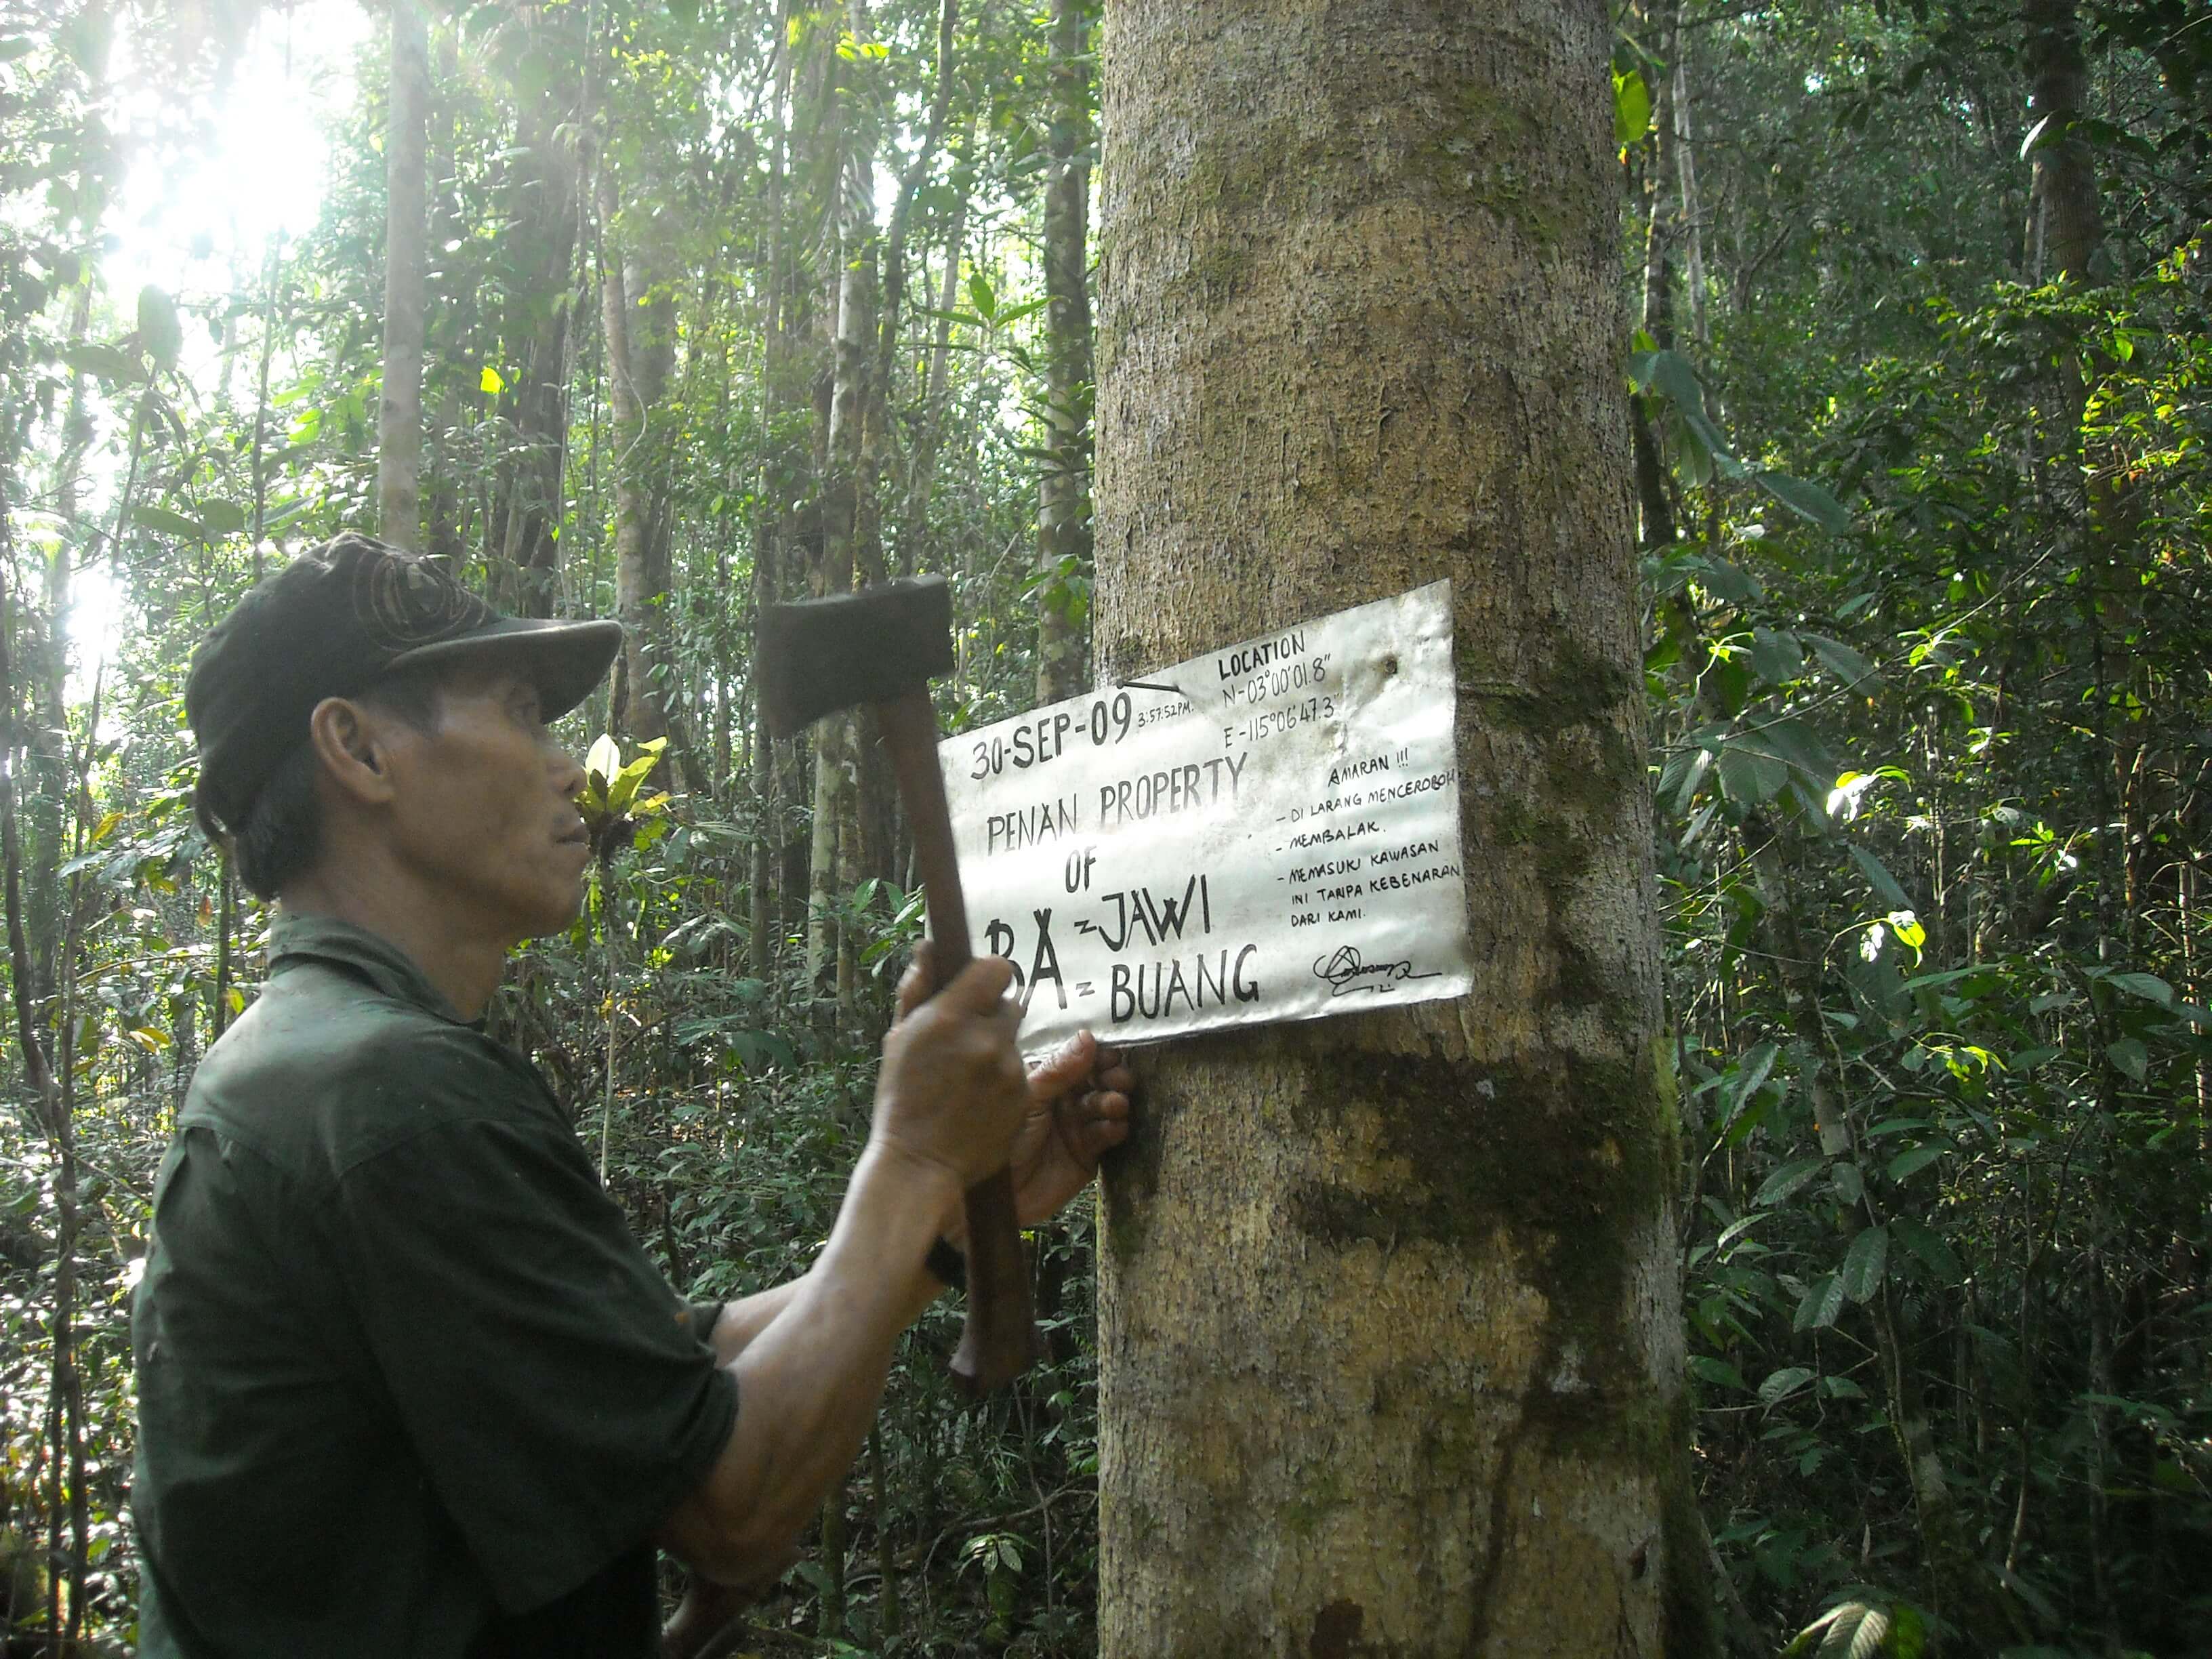 Ein Penan markiert sein Land, um seinem Anpsuch Gewicht zu verleihen